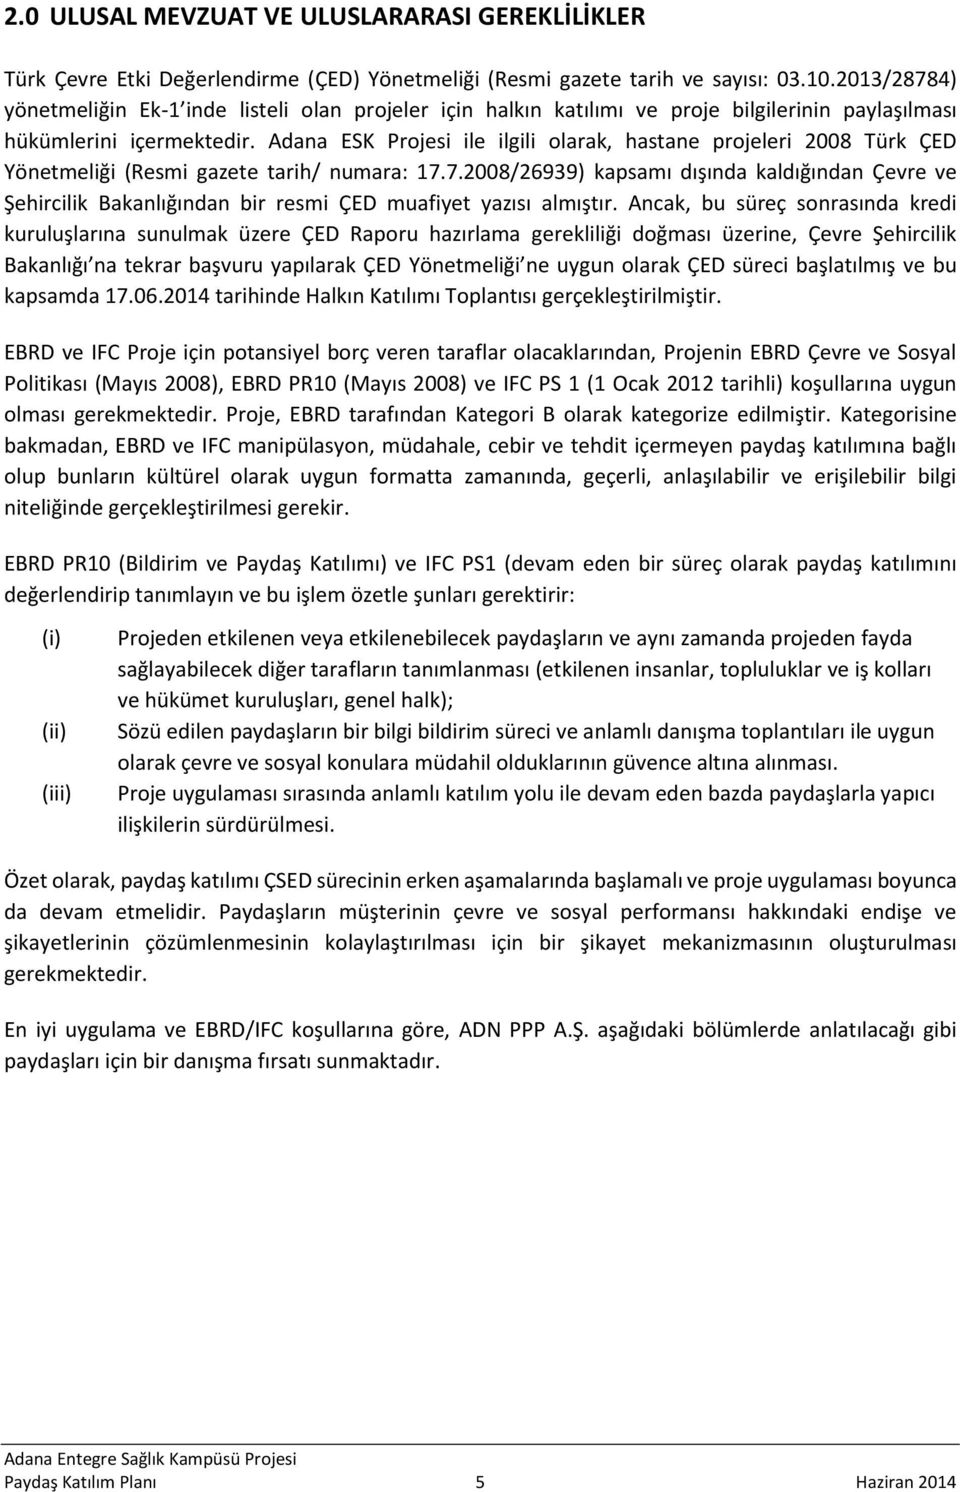 Adana ESK Projesi ile ilgili olarak, hastane projeleri 2008 Türk ÇED Yönetmeliği (Resmi gazete tarih/ numara: 17.